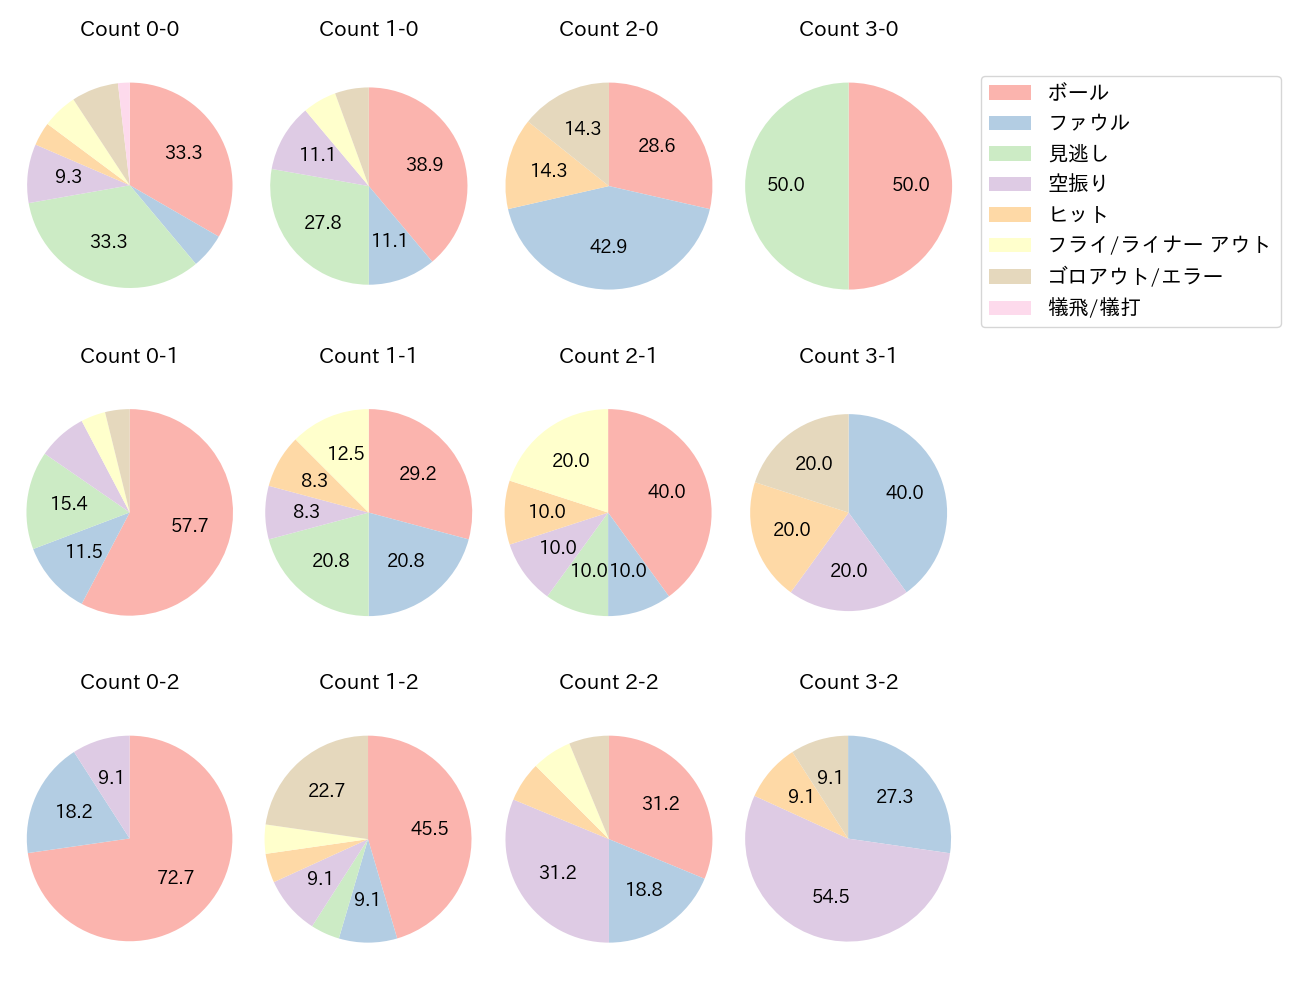 堂林 翔太の球数分布(2021年4月)